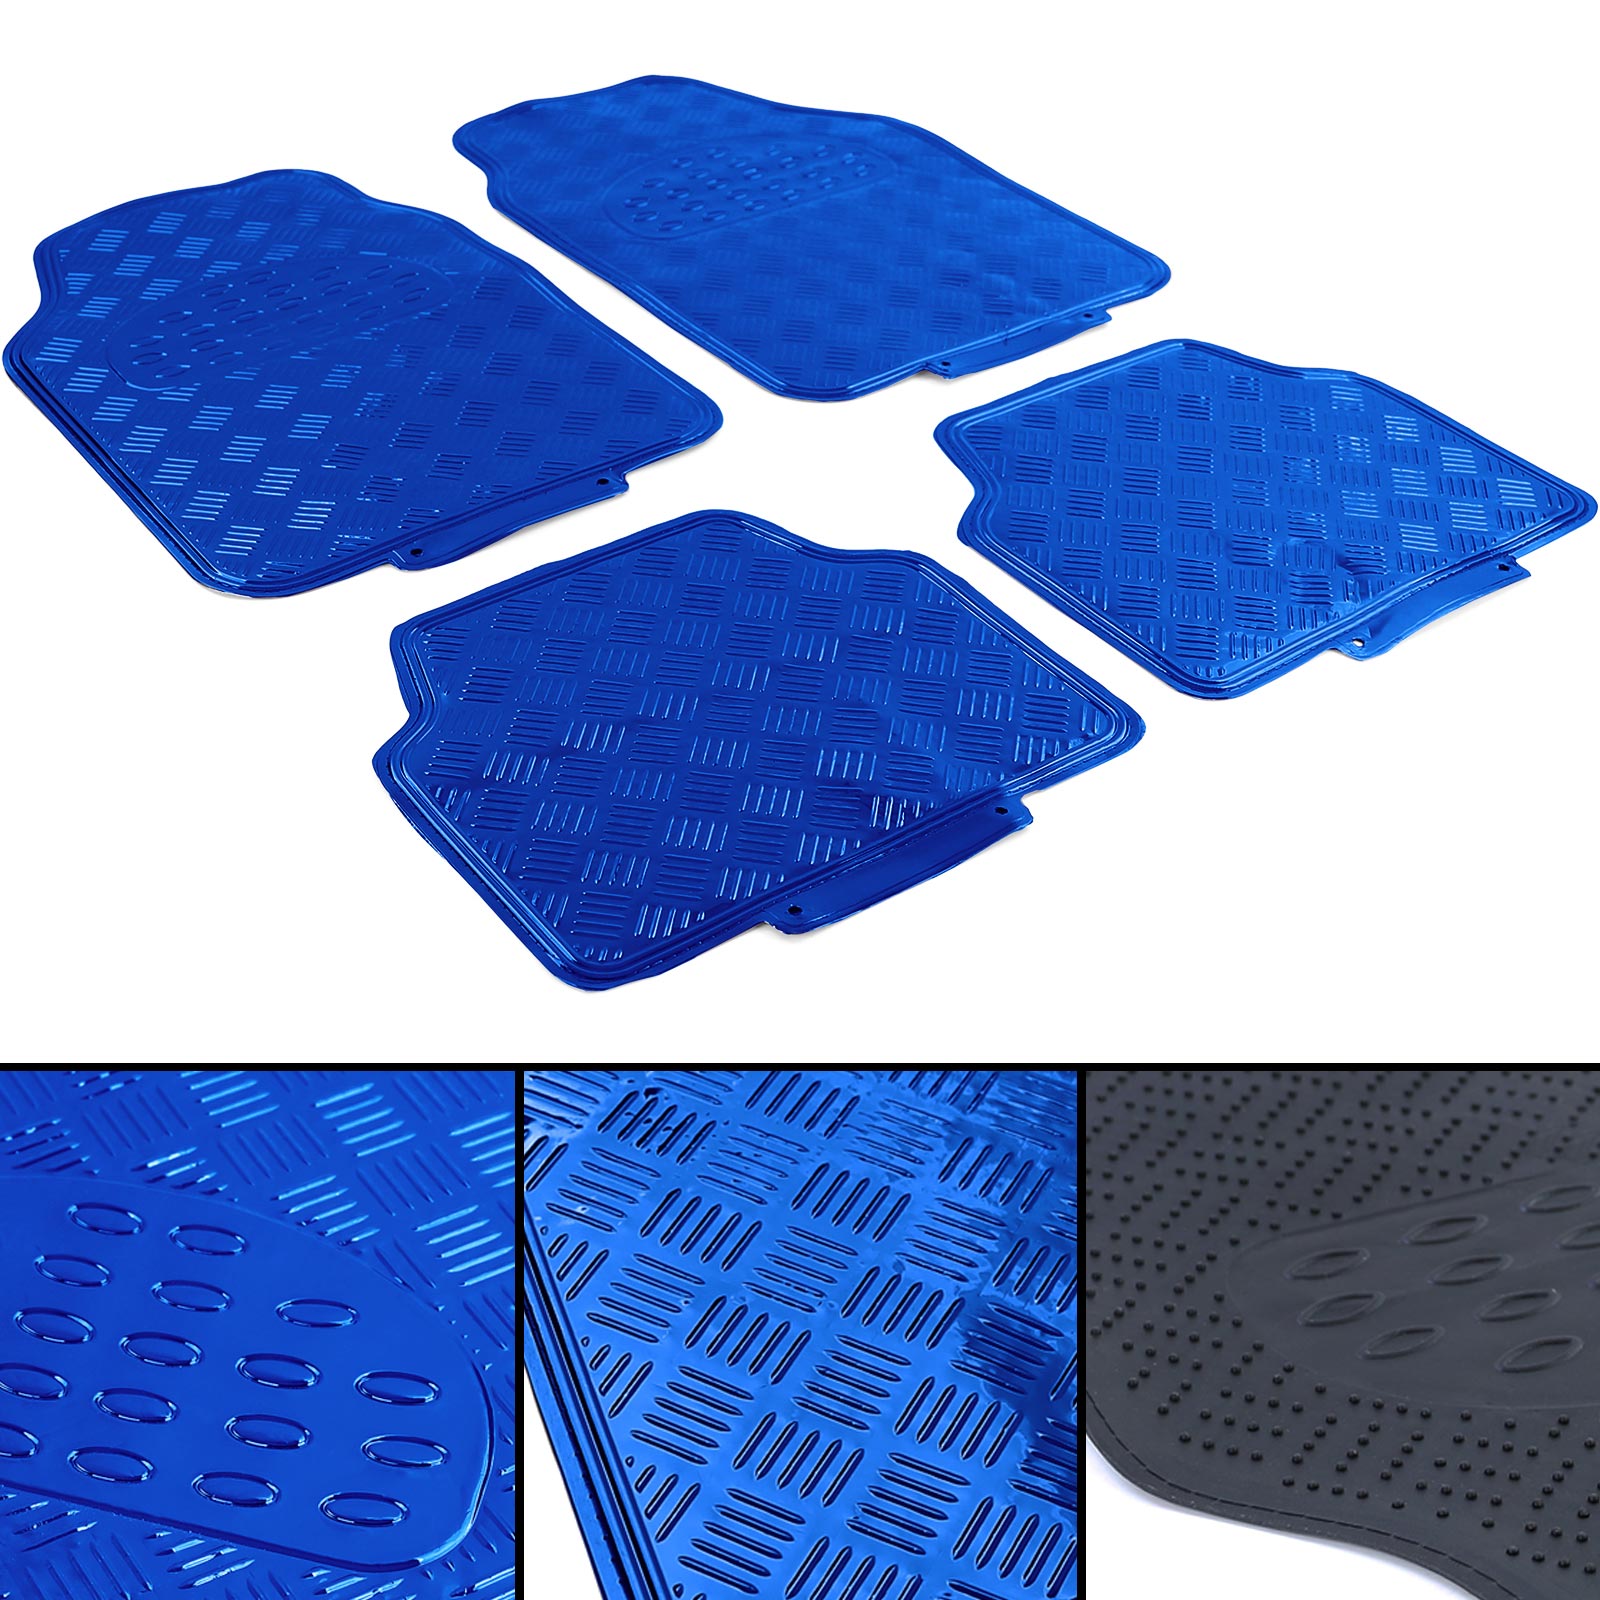 Auto Gummi Fußmatten universal Alu Riffelblech Optik 4-teilig Chrom Blau  kaufen